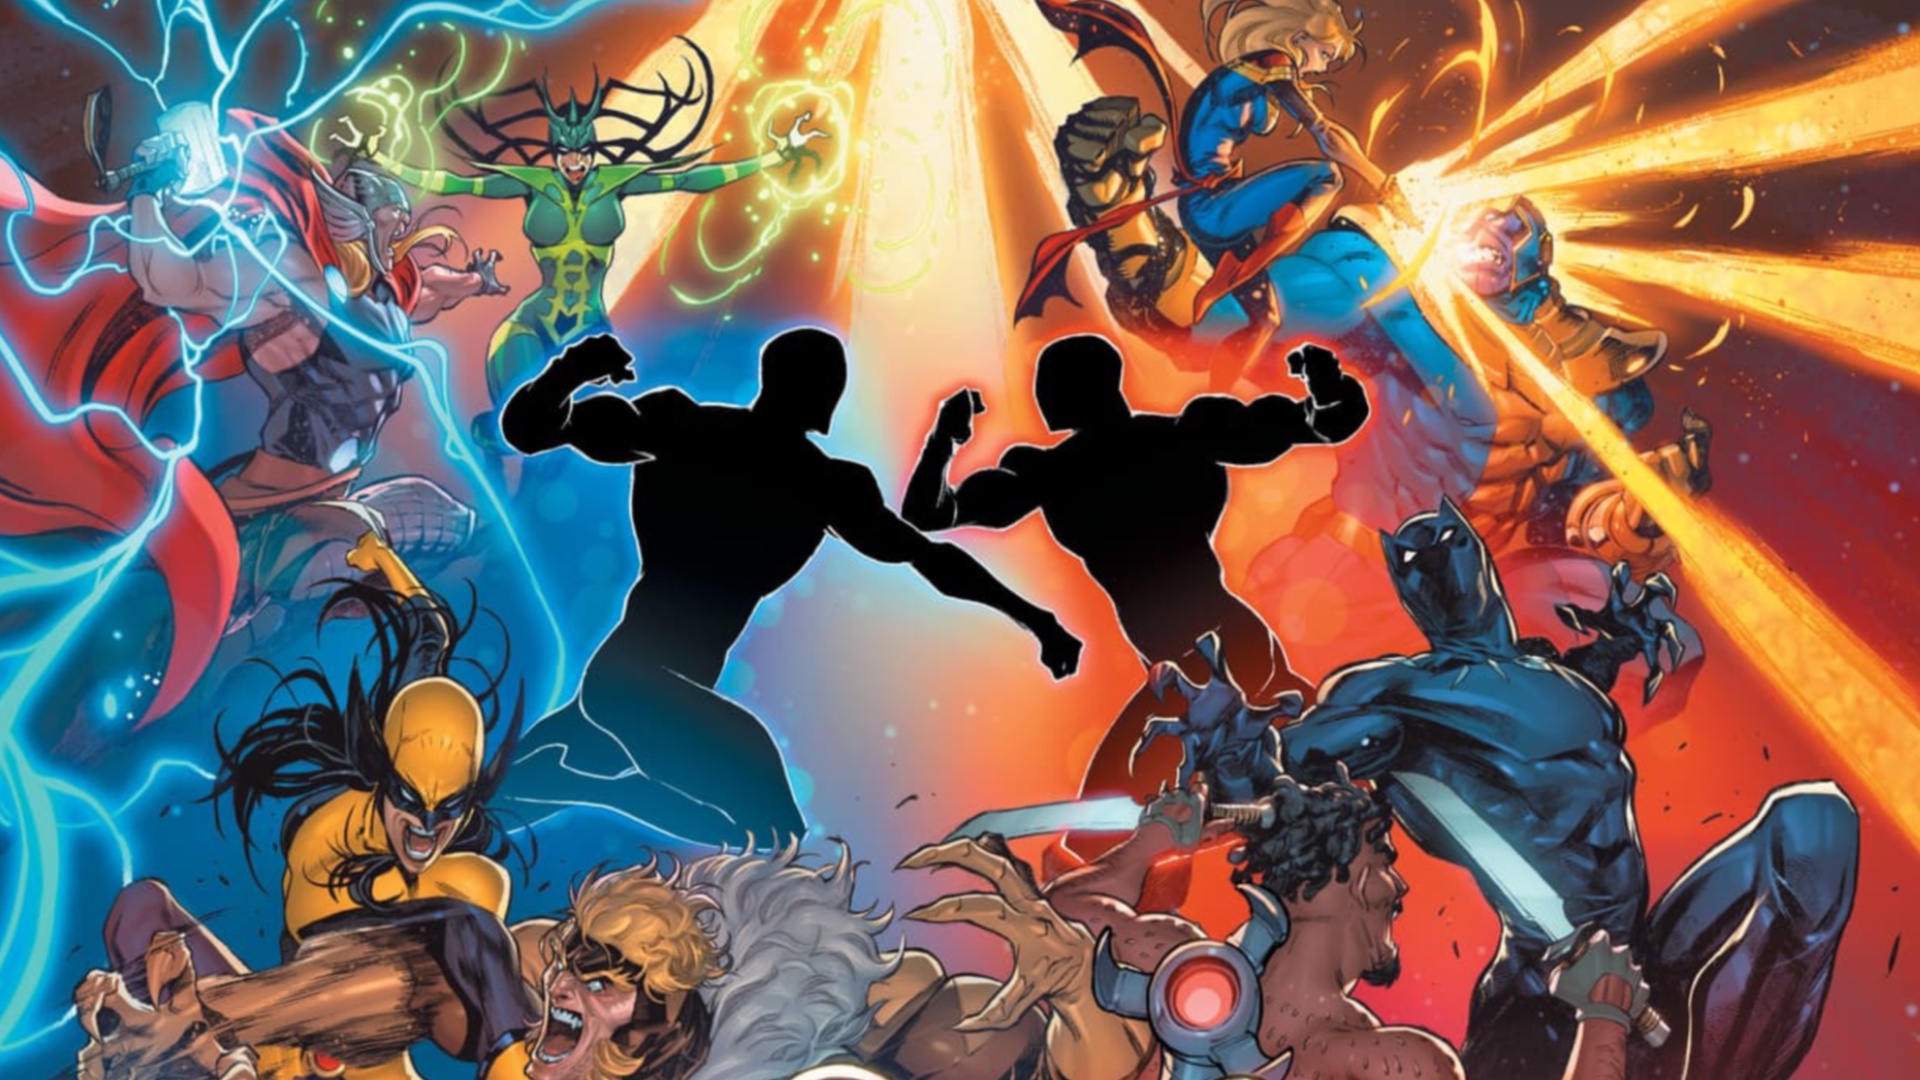 Múltiples héroes luchan alrededor de dos figuras tachadas en ilustraciones del Juego de Rol Multiverso Marvel